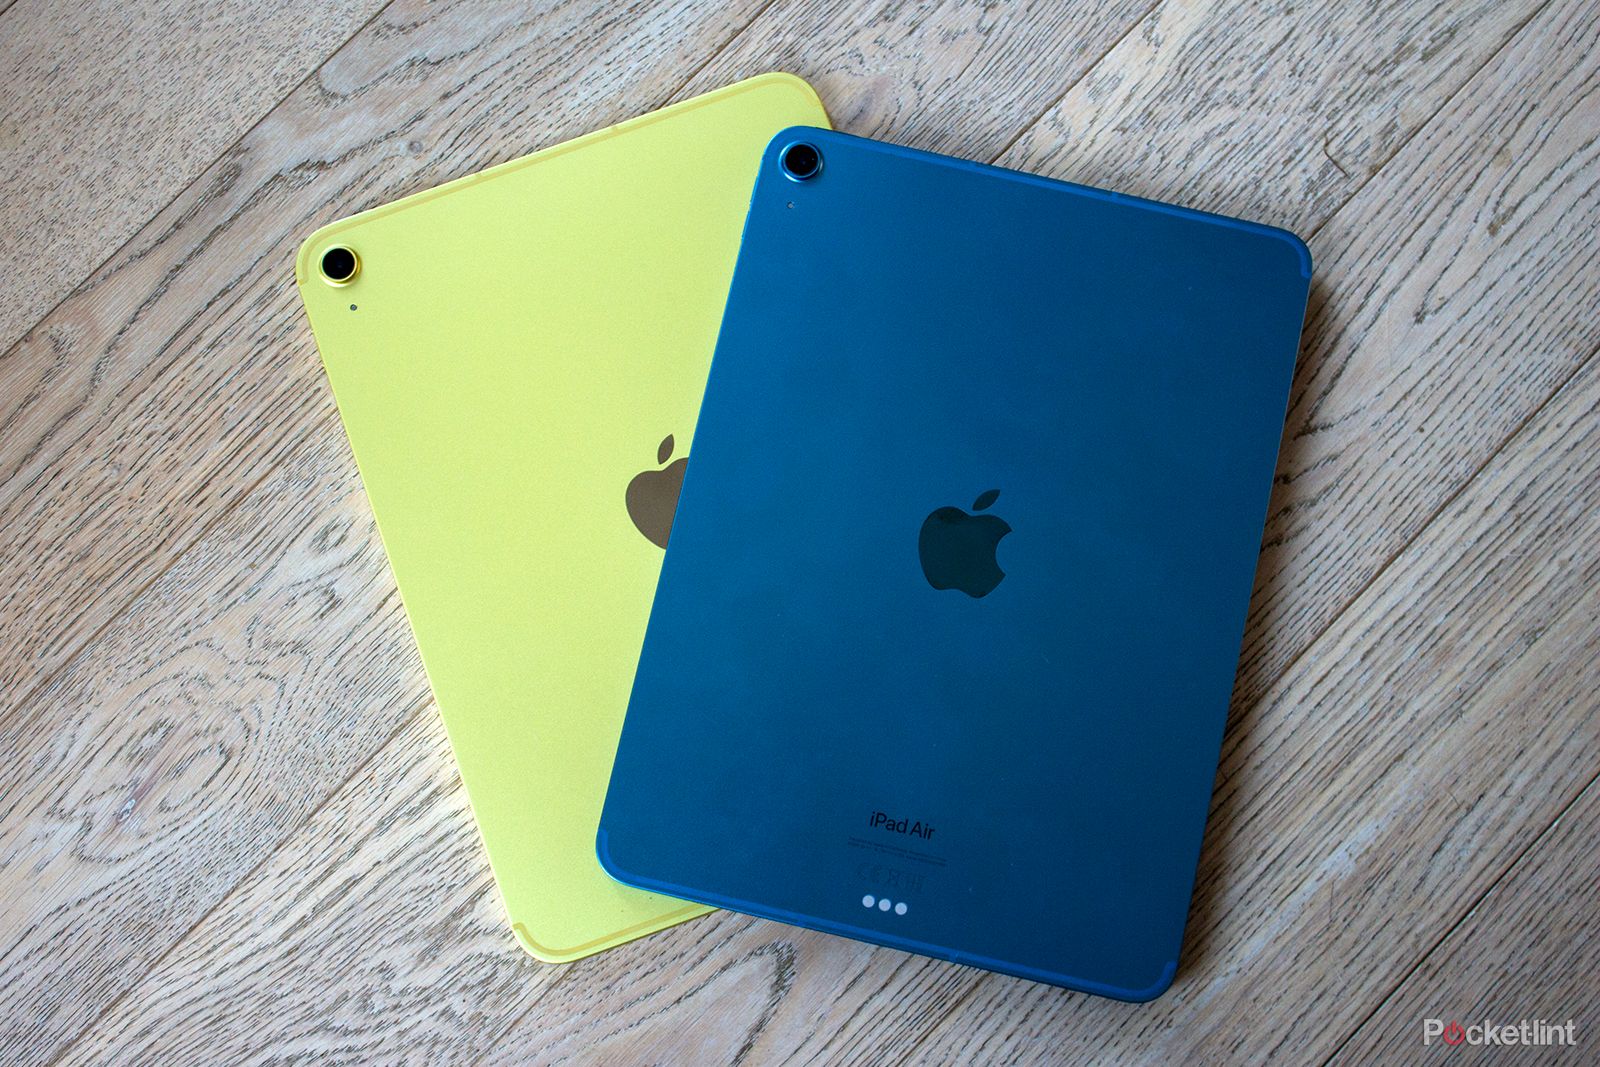 iPad vs iPad Air 4